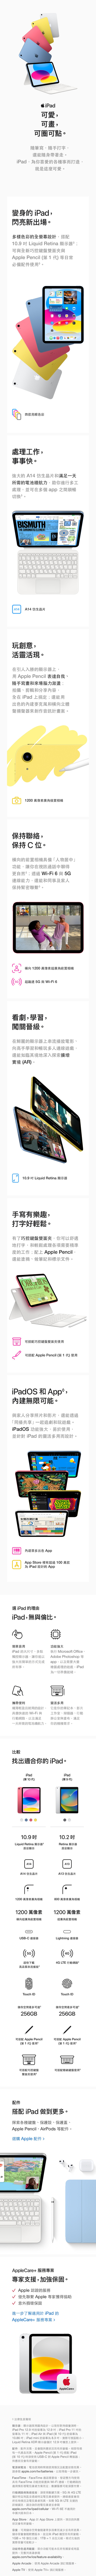 【Apple】iPad 10 Wi-Fi版 10.9吋 64G(美版)